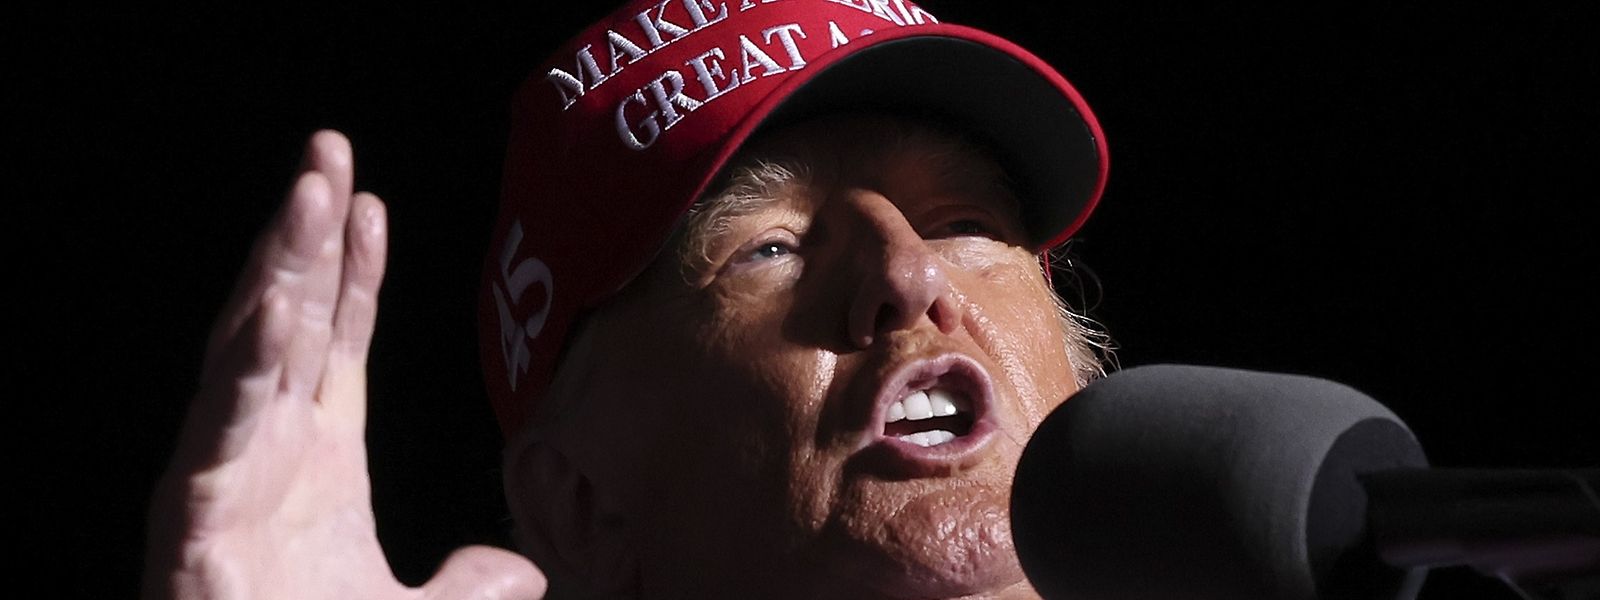 Donald Trump, casquette rouge «Make America great again» enfoncée sur la tête, a appelé à une «vague géante» de son parti pour «mettre fin à la destruction du pays».